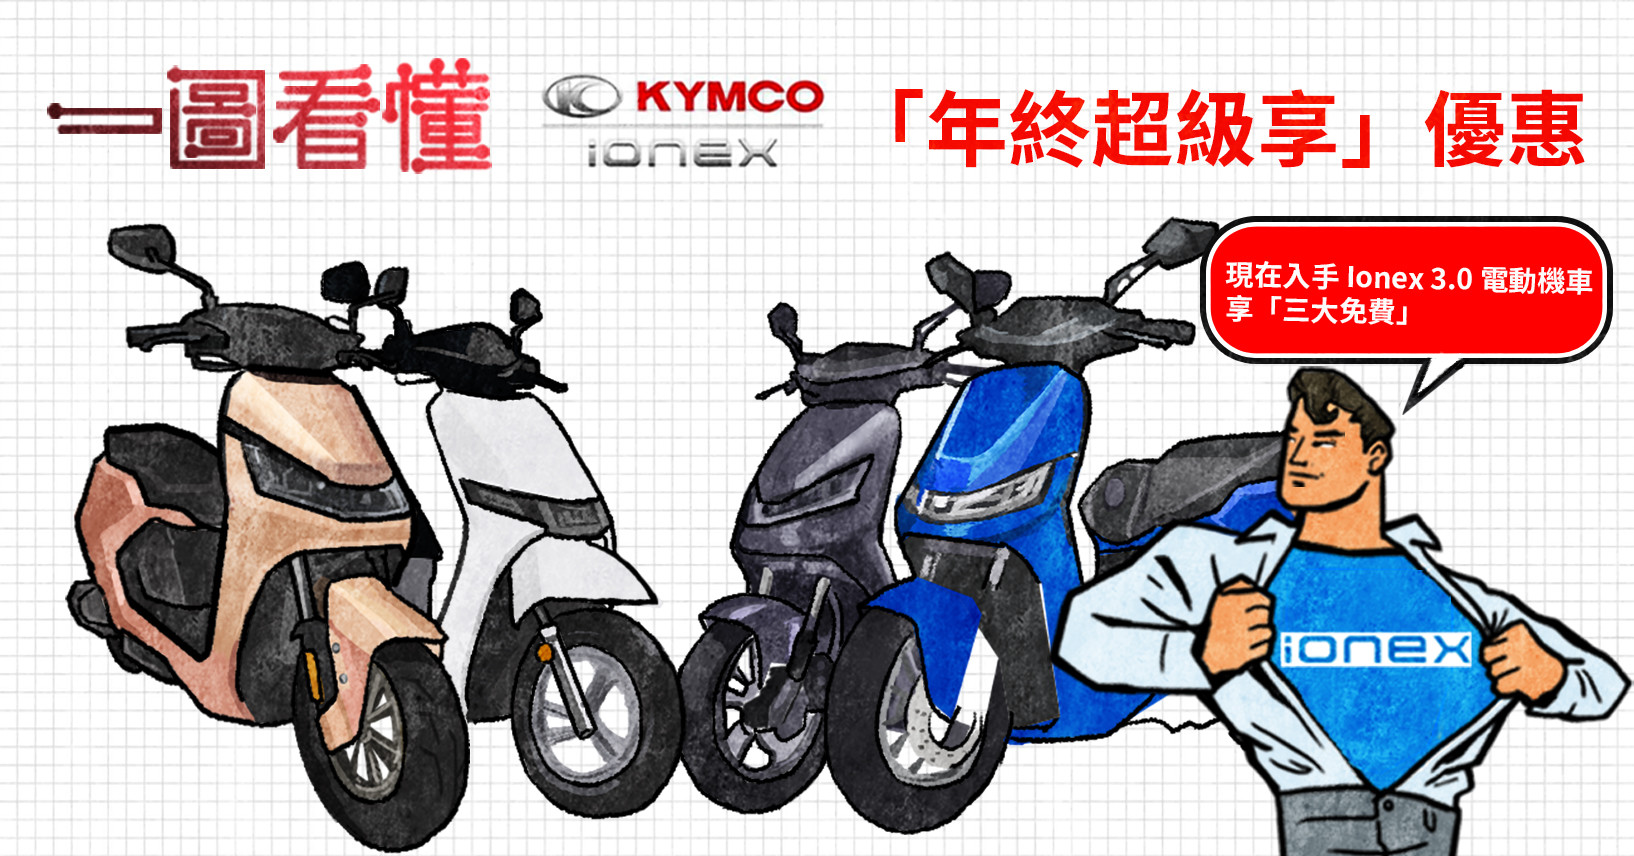 照片中提到了一圖看懂、O KYMCO、「年終超級享」優惠，跟金科、Comex集團有關，包含了摩托車配件、摩托車配件、摩托車、自行車、摩托車